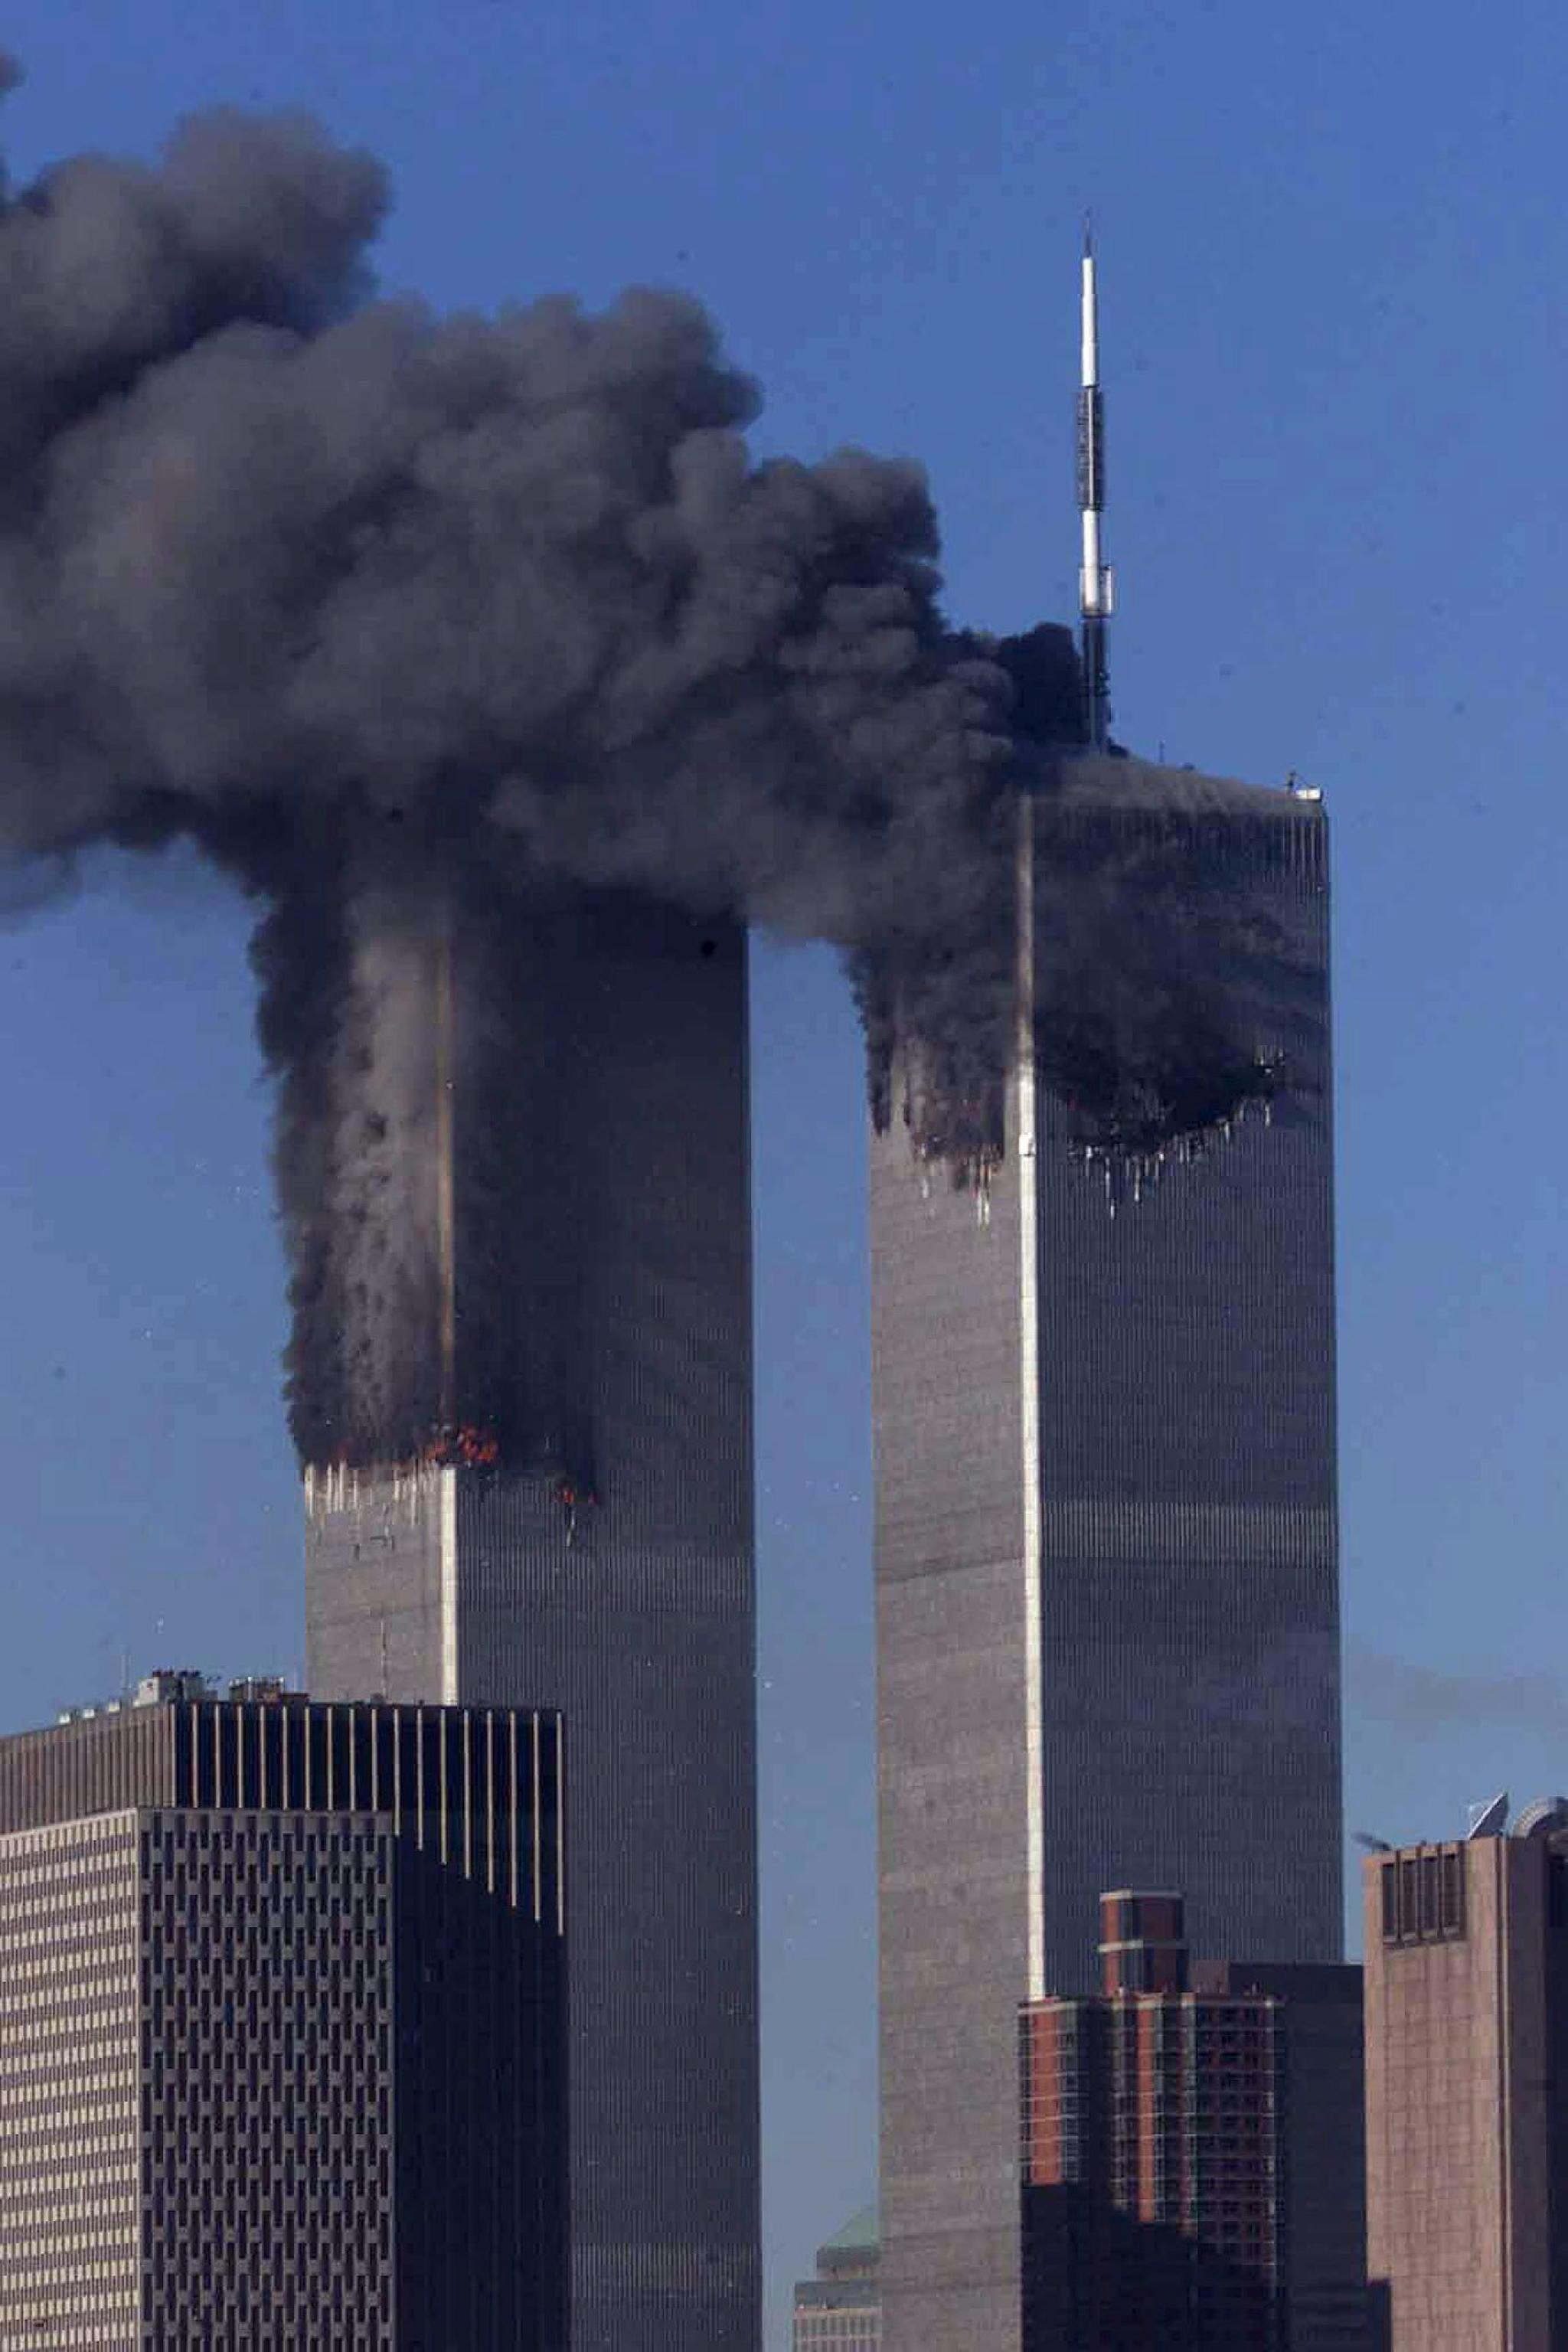 Теракт башен близнецов 11 сентября 2001. Башни Близнецы в Нью-Йорке 11 сентября. ВТЦ Нью-Йорк 2001.